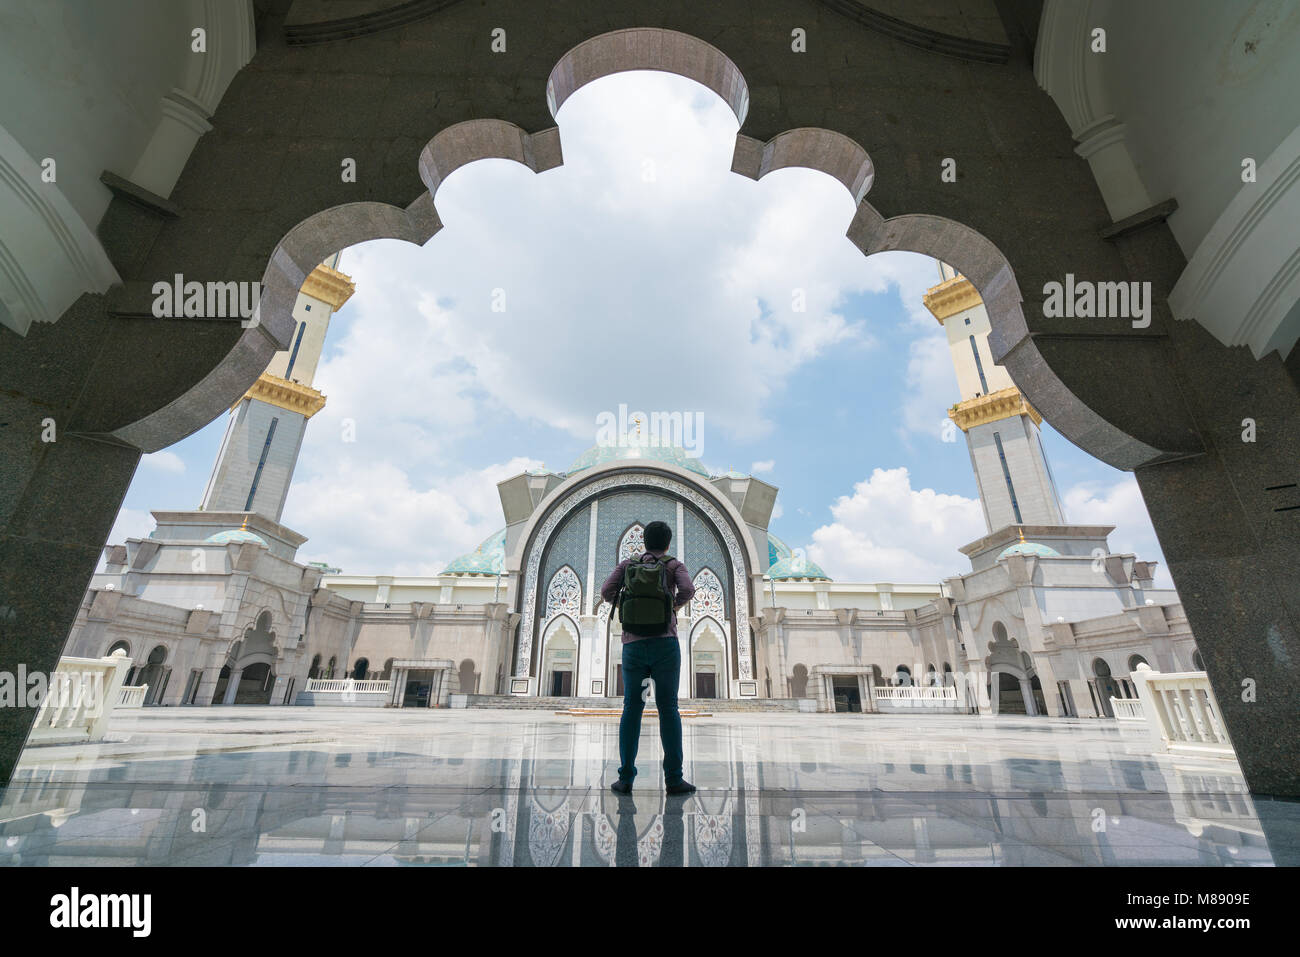 Jeune homme voyageur avec sac à dos de marche de la mosquée de Wilayah Persekutuan Kuala Lumpur, Malaisie. Banque D'Images